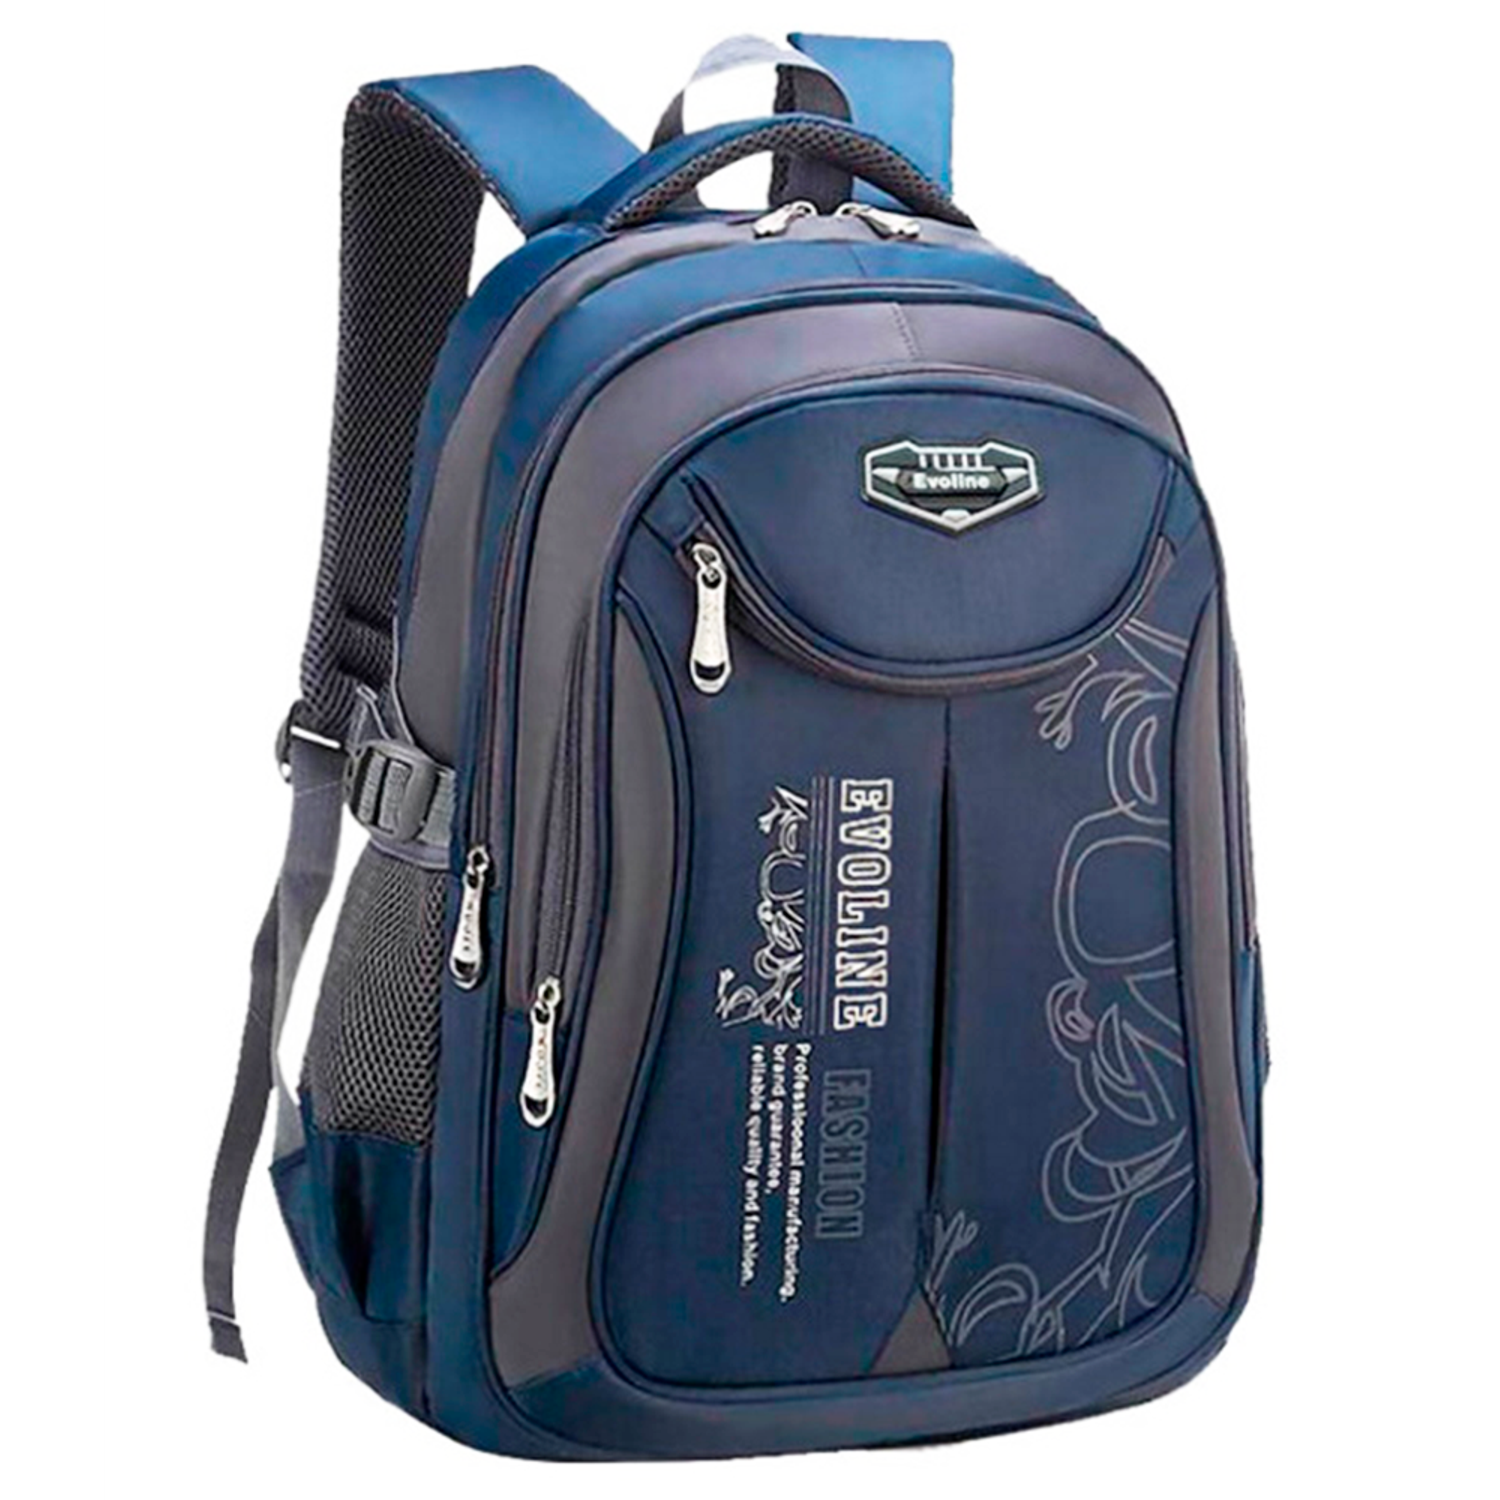 Рюкзак школьный Evoline большой темно-синий с потайным карманом - фото 1